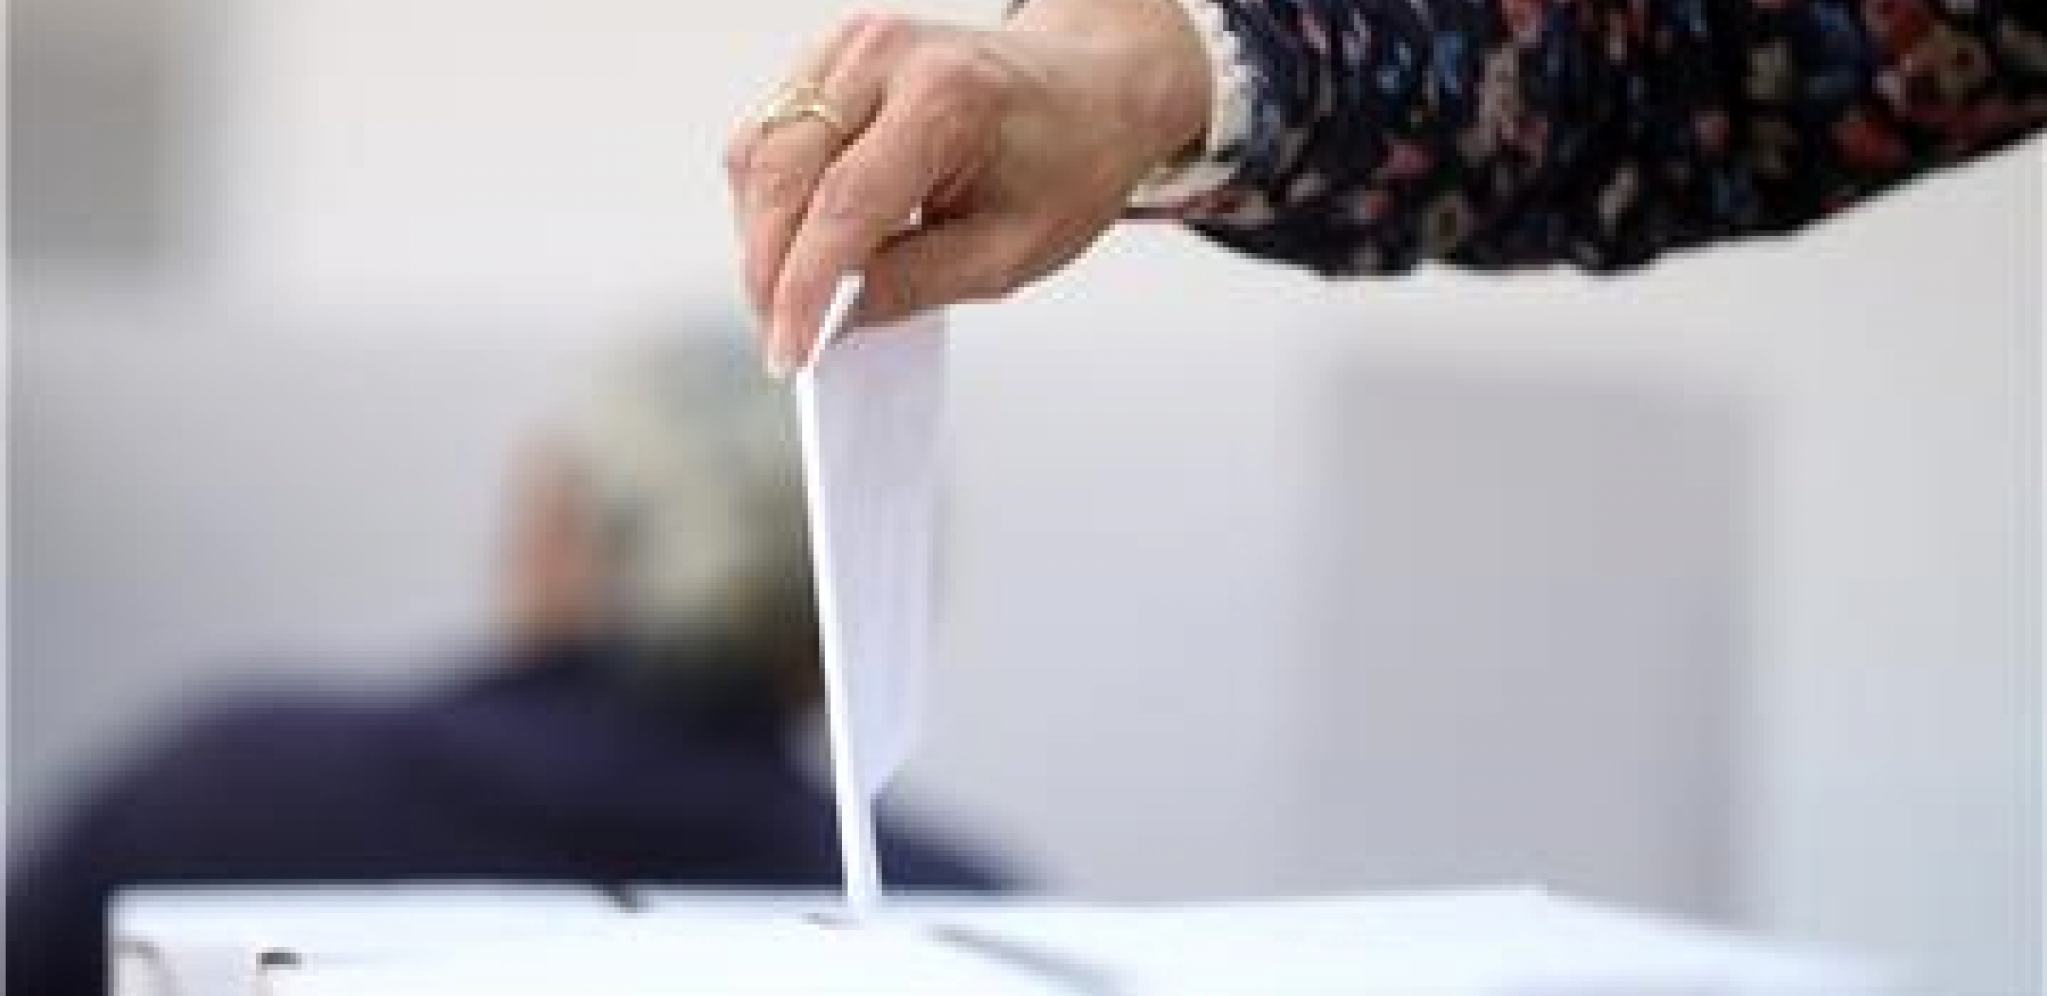 VAŽNA INFORMACIJA ZA GRAĐANE ZA DAN IZBORA Evo kako da proverite da li ste upisani u birački spisak